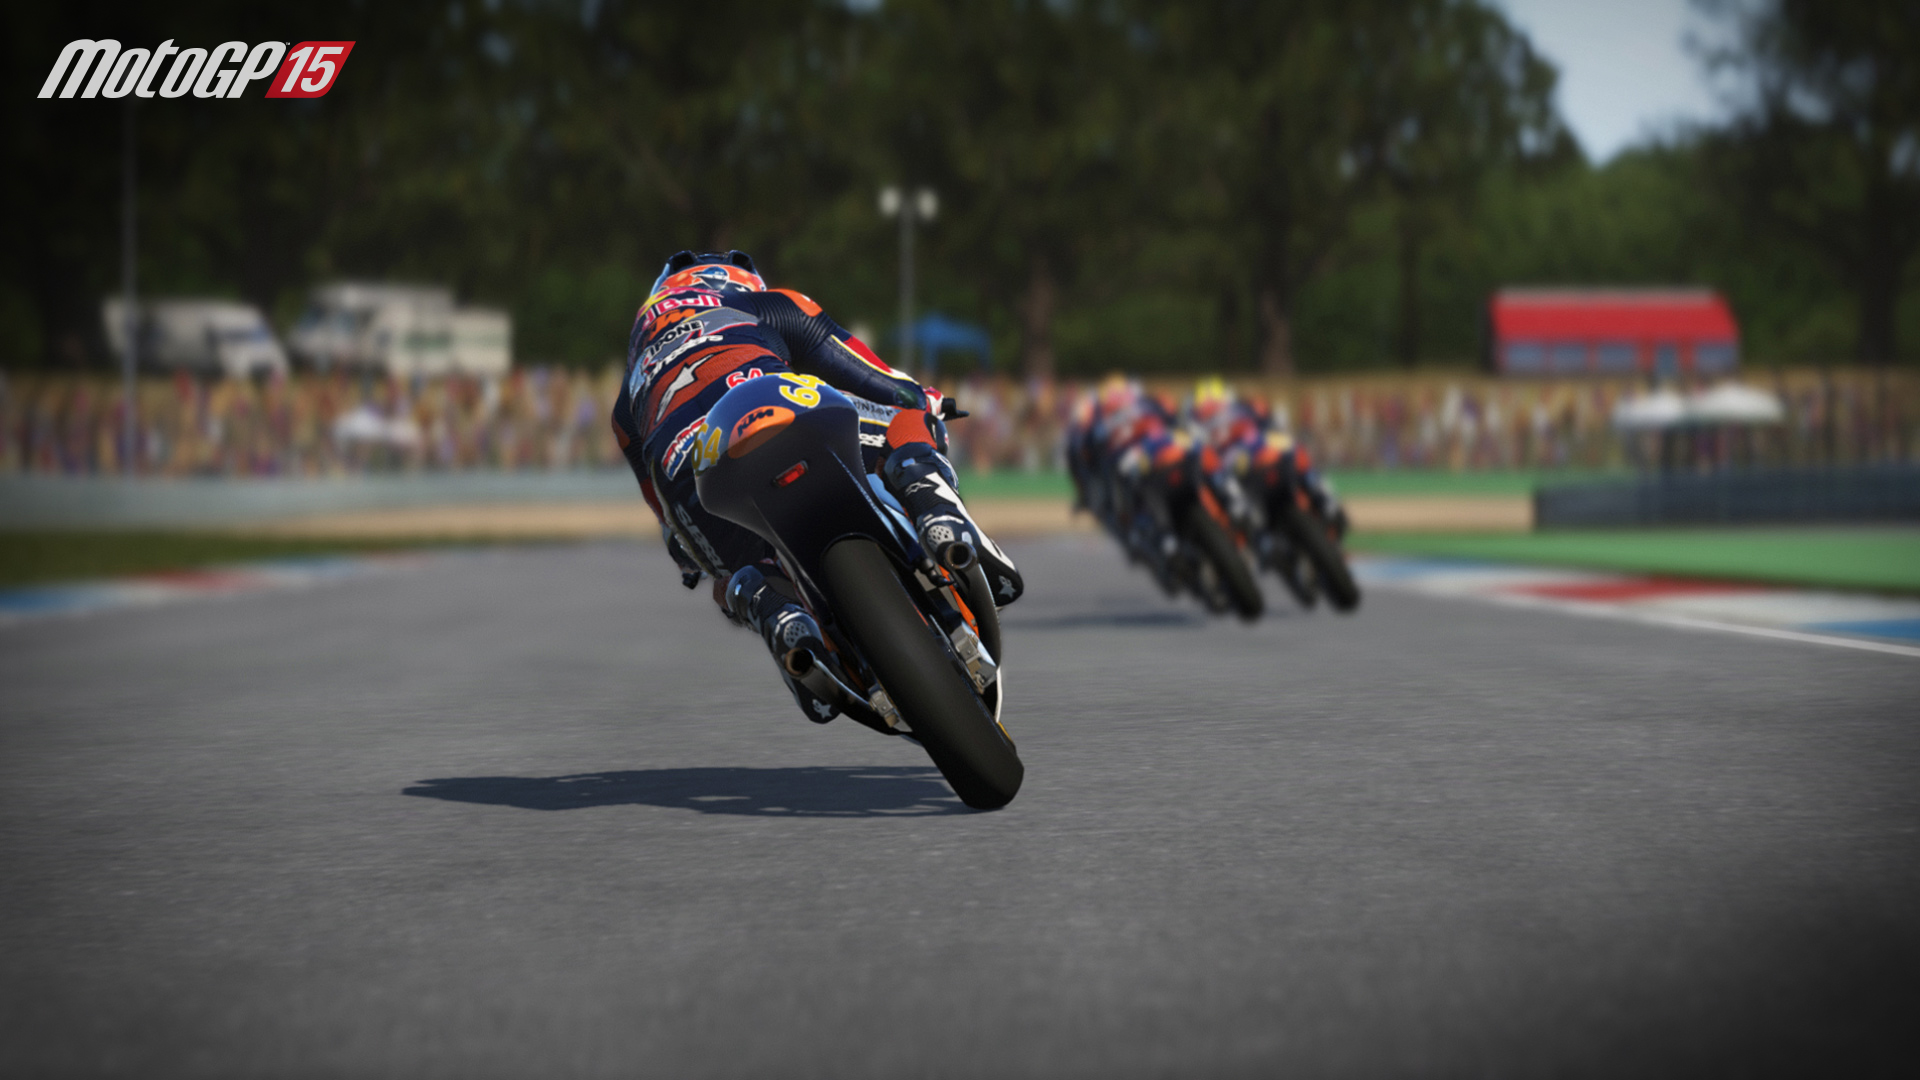 MotoGP15 Red Bull Rookies Cup screenshot